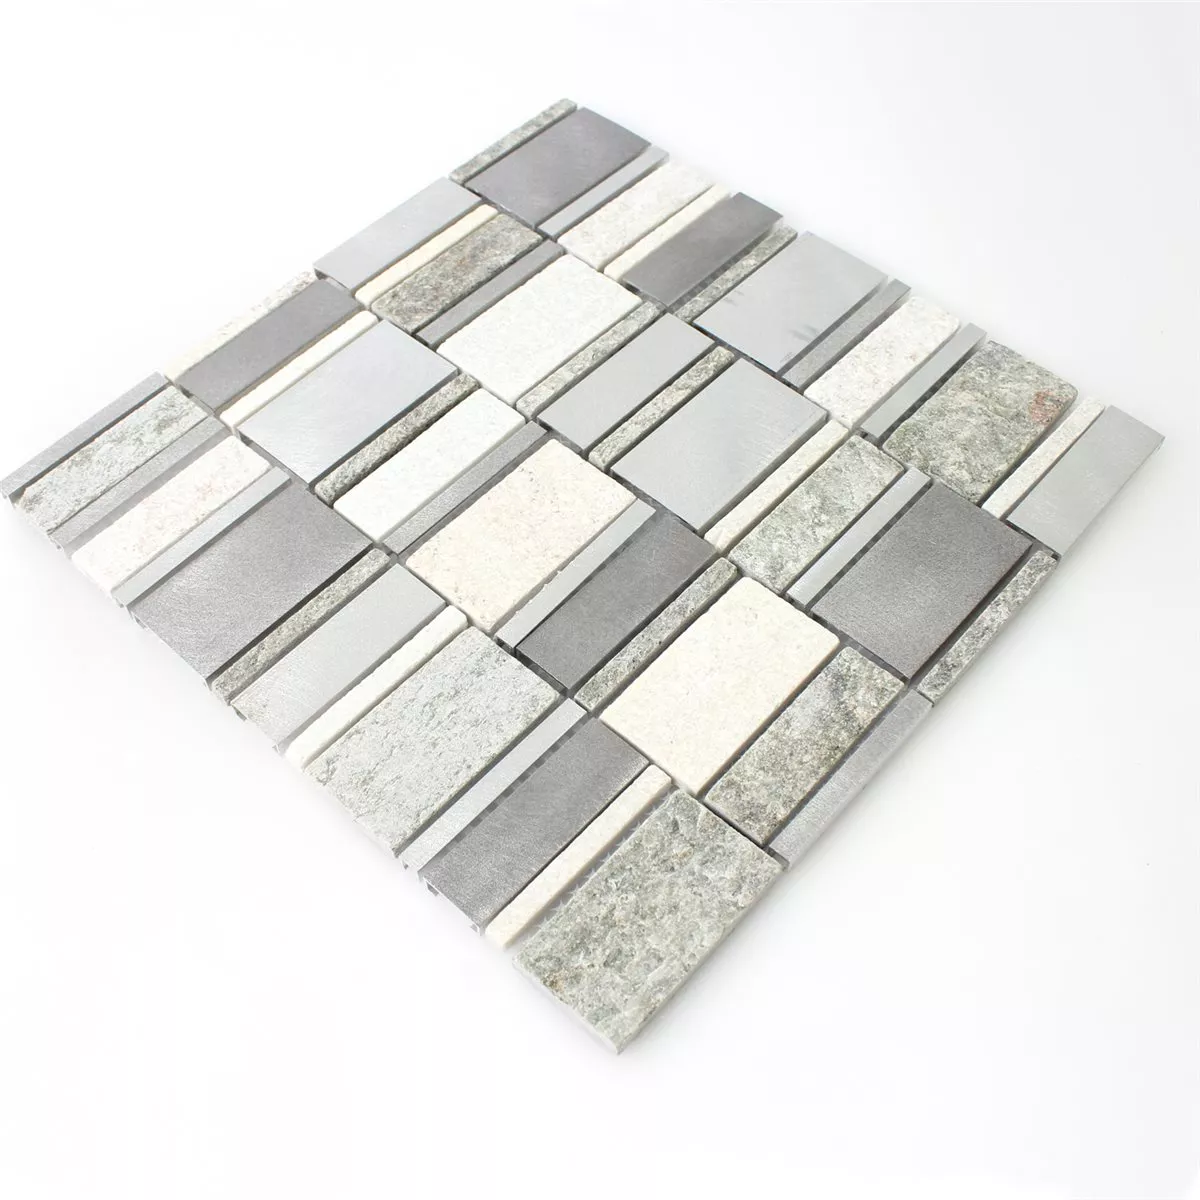 Sample Mosaic Tiles Quartzite Aluminium Silver Mix